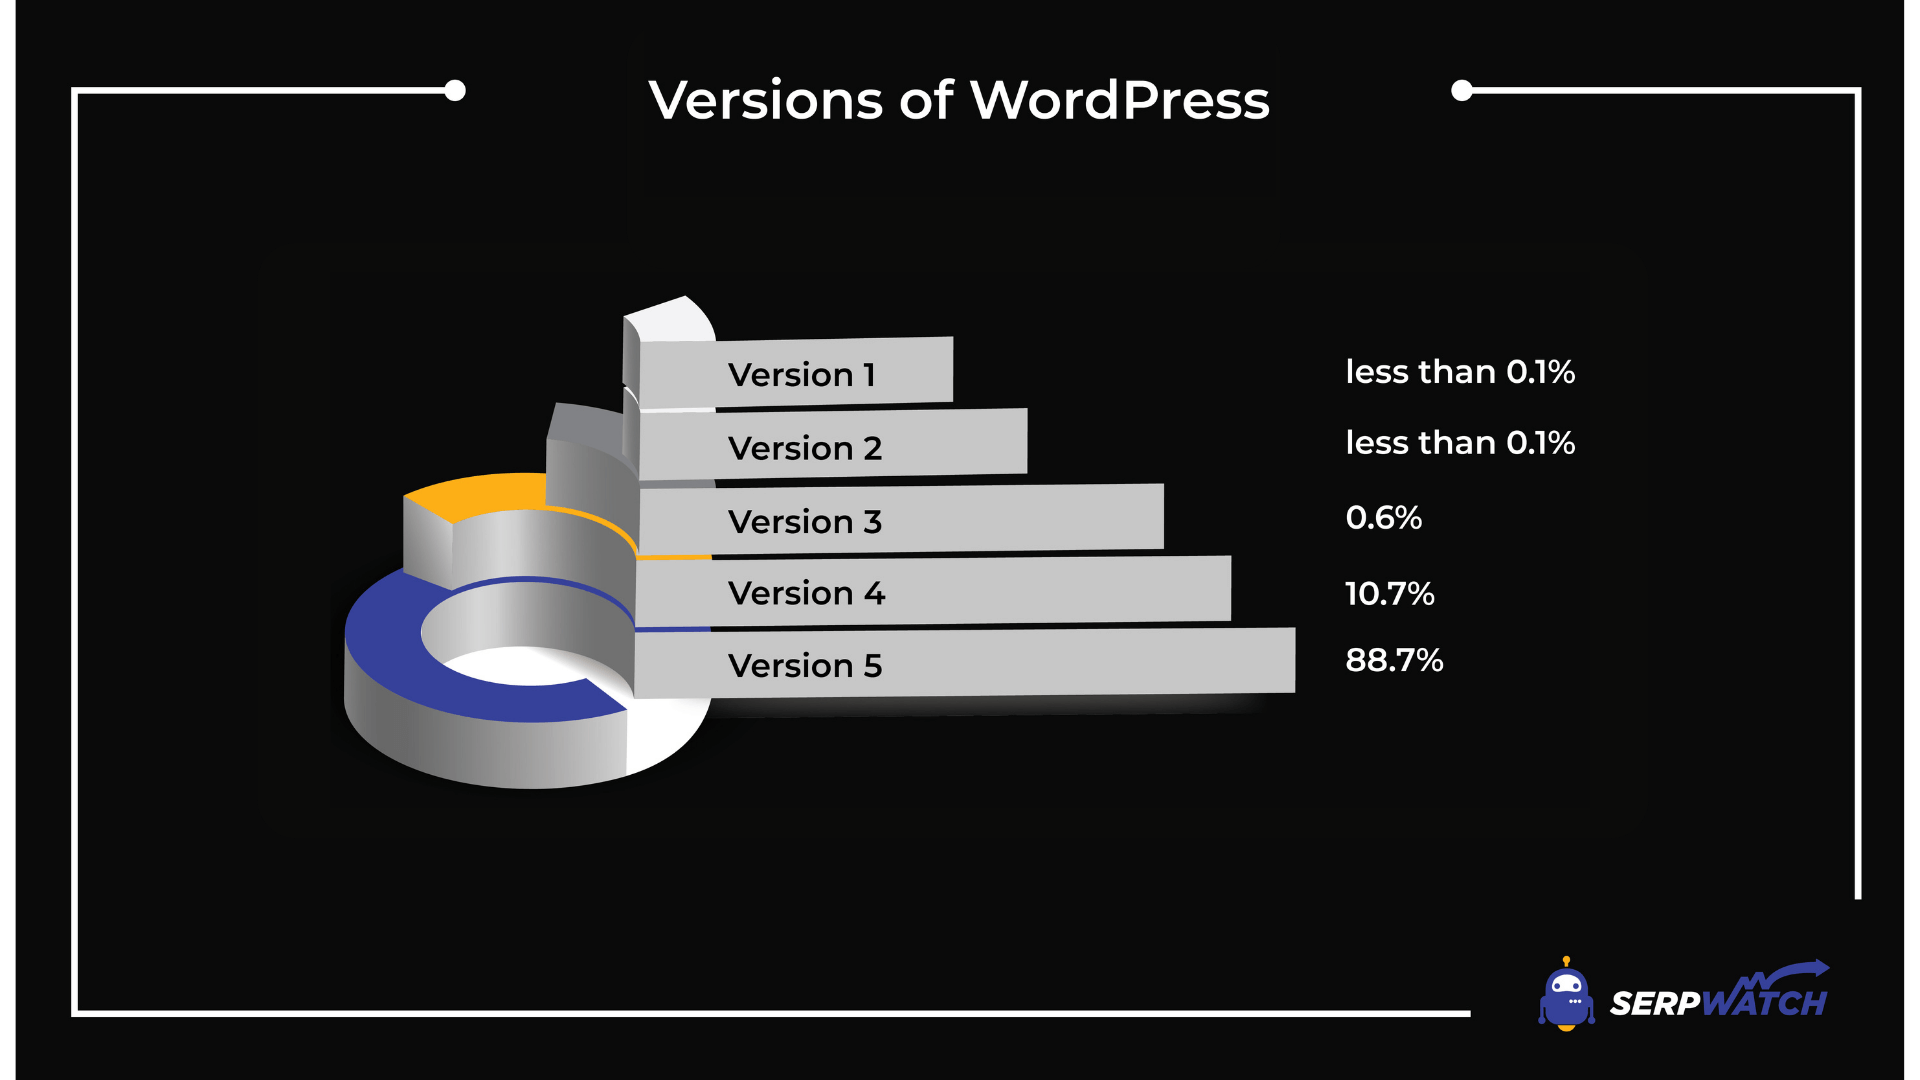 WordPress Versions Share 2021